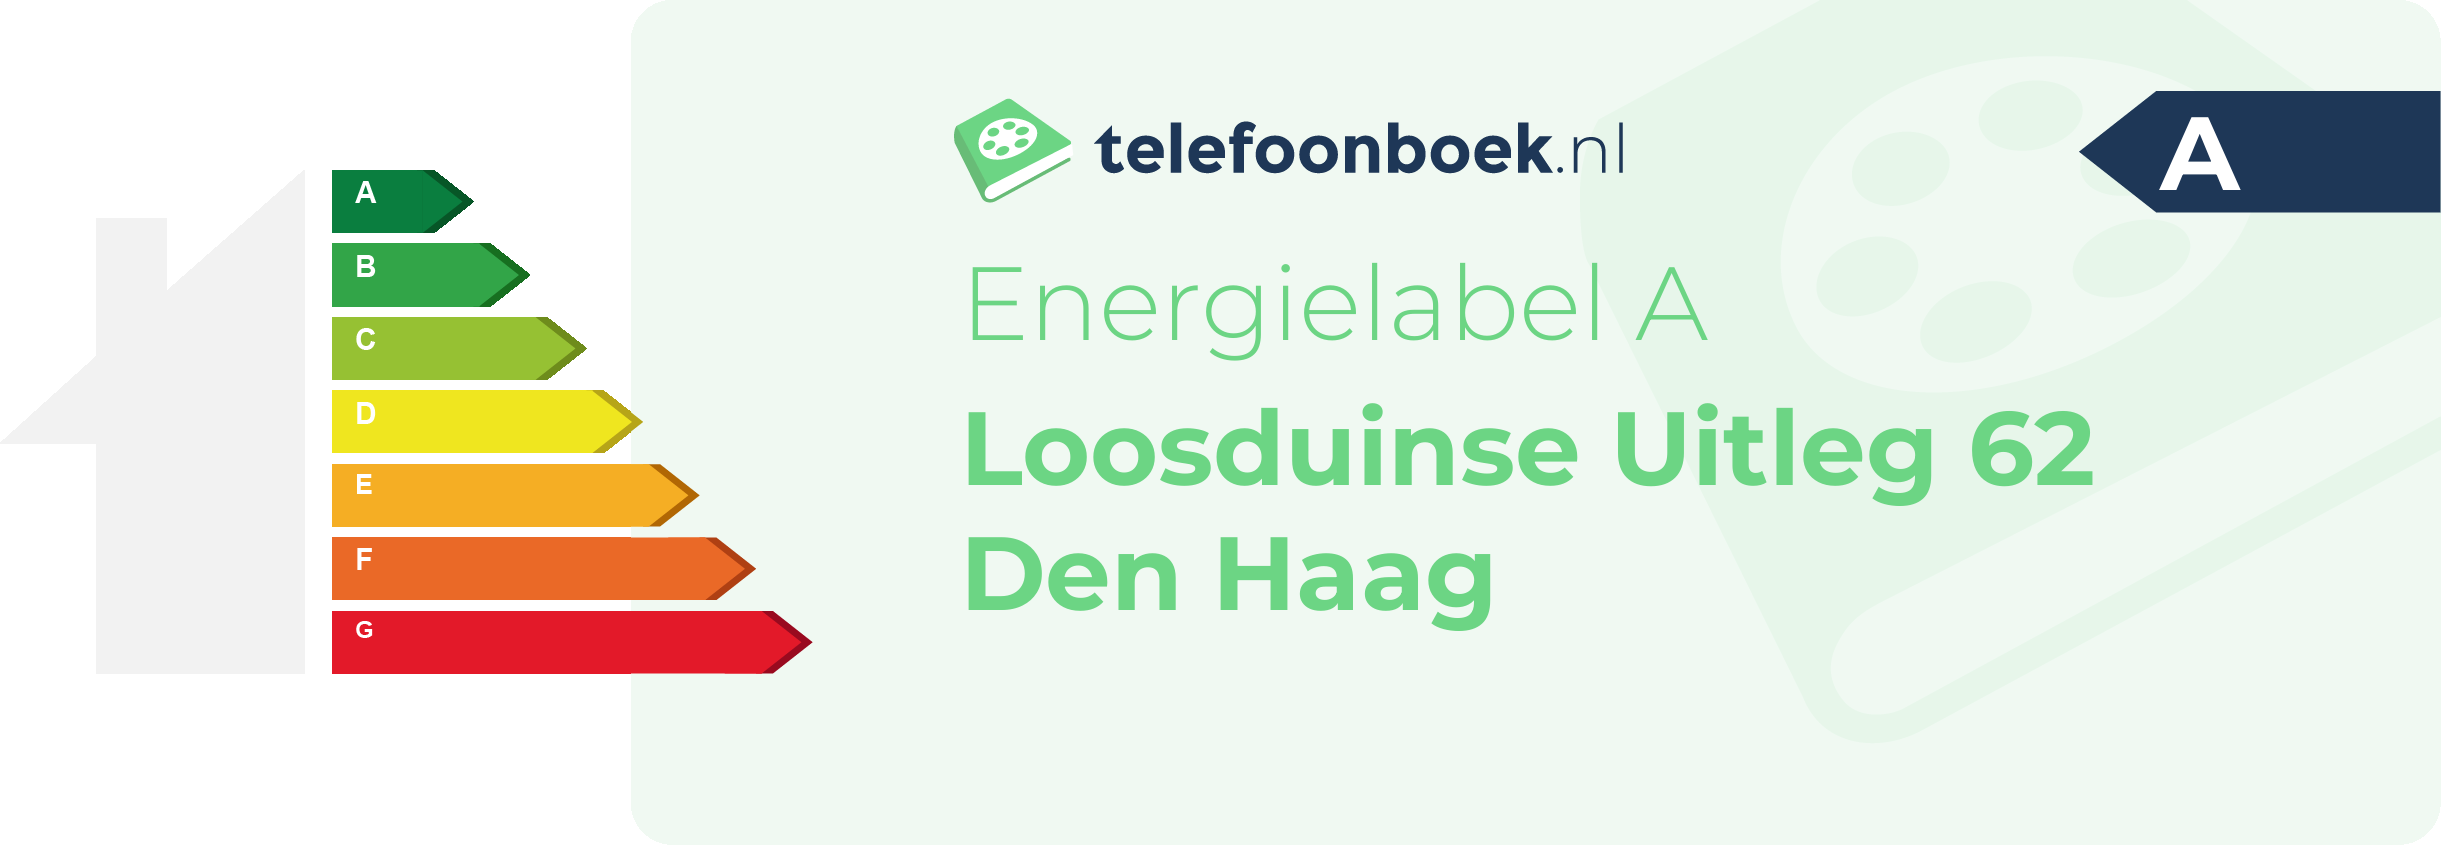 Energielabel Loosduinse Uitleg 62 Den Haag